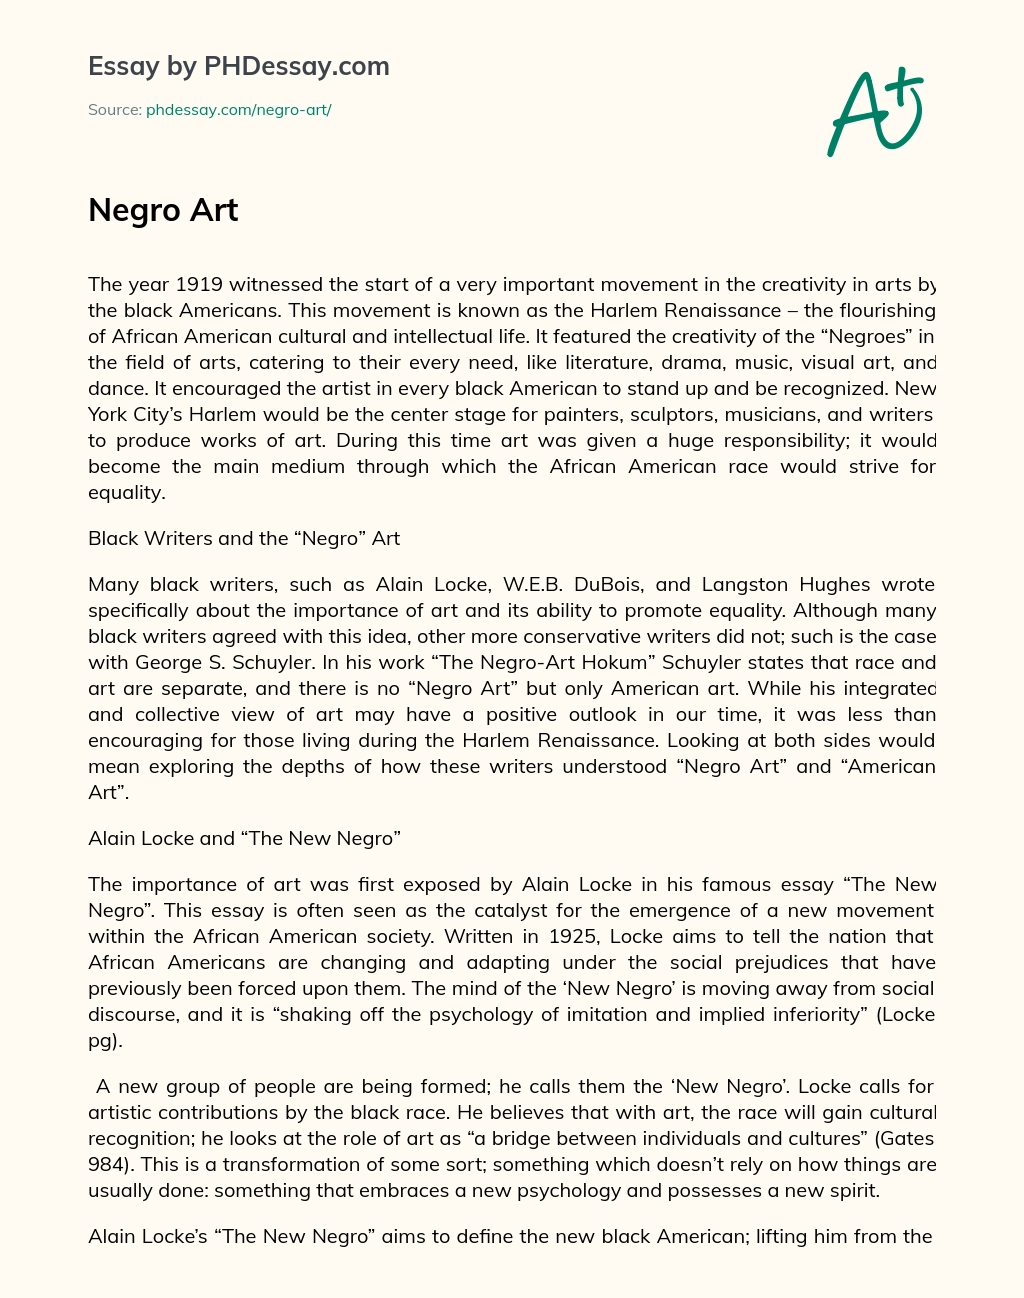 Negro Art essay